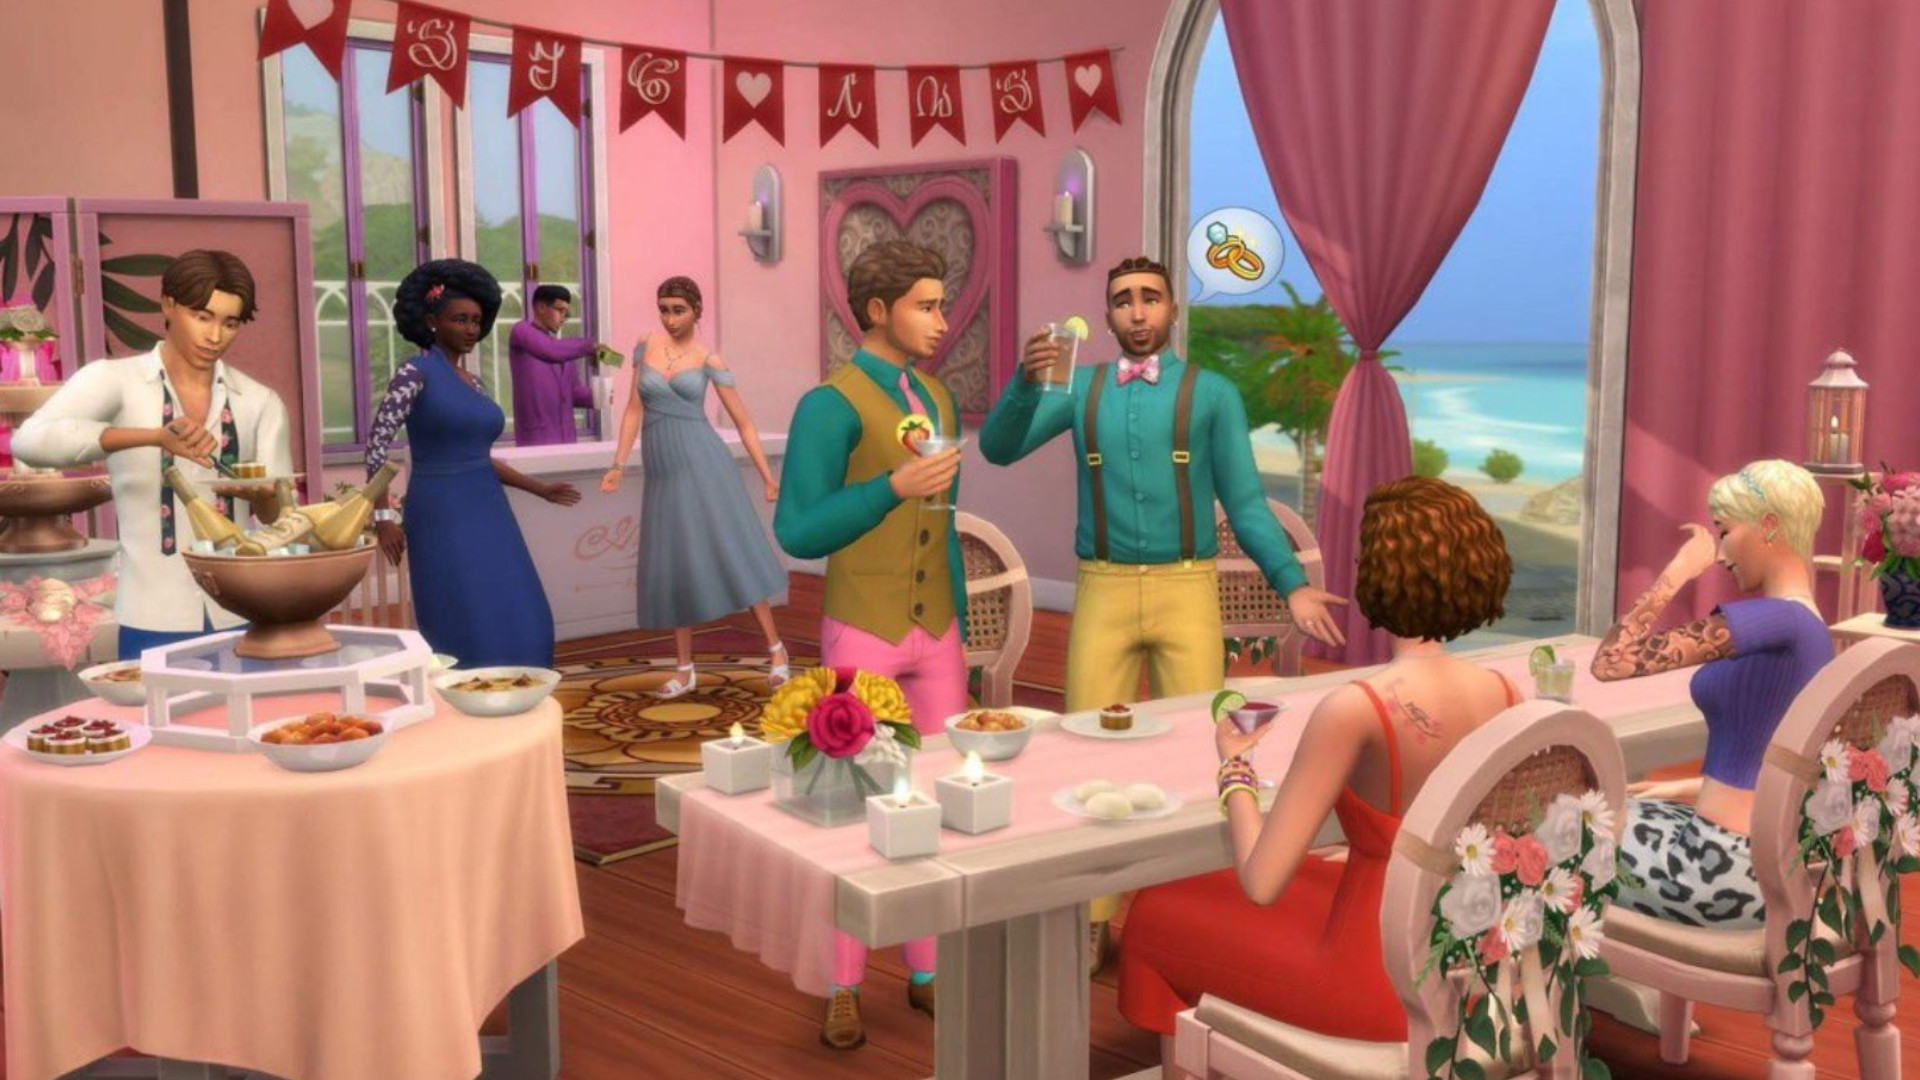 Sims 4 wedding pack leaks weeks ahead of launch